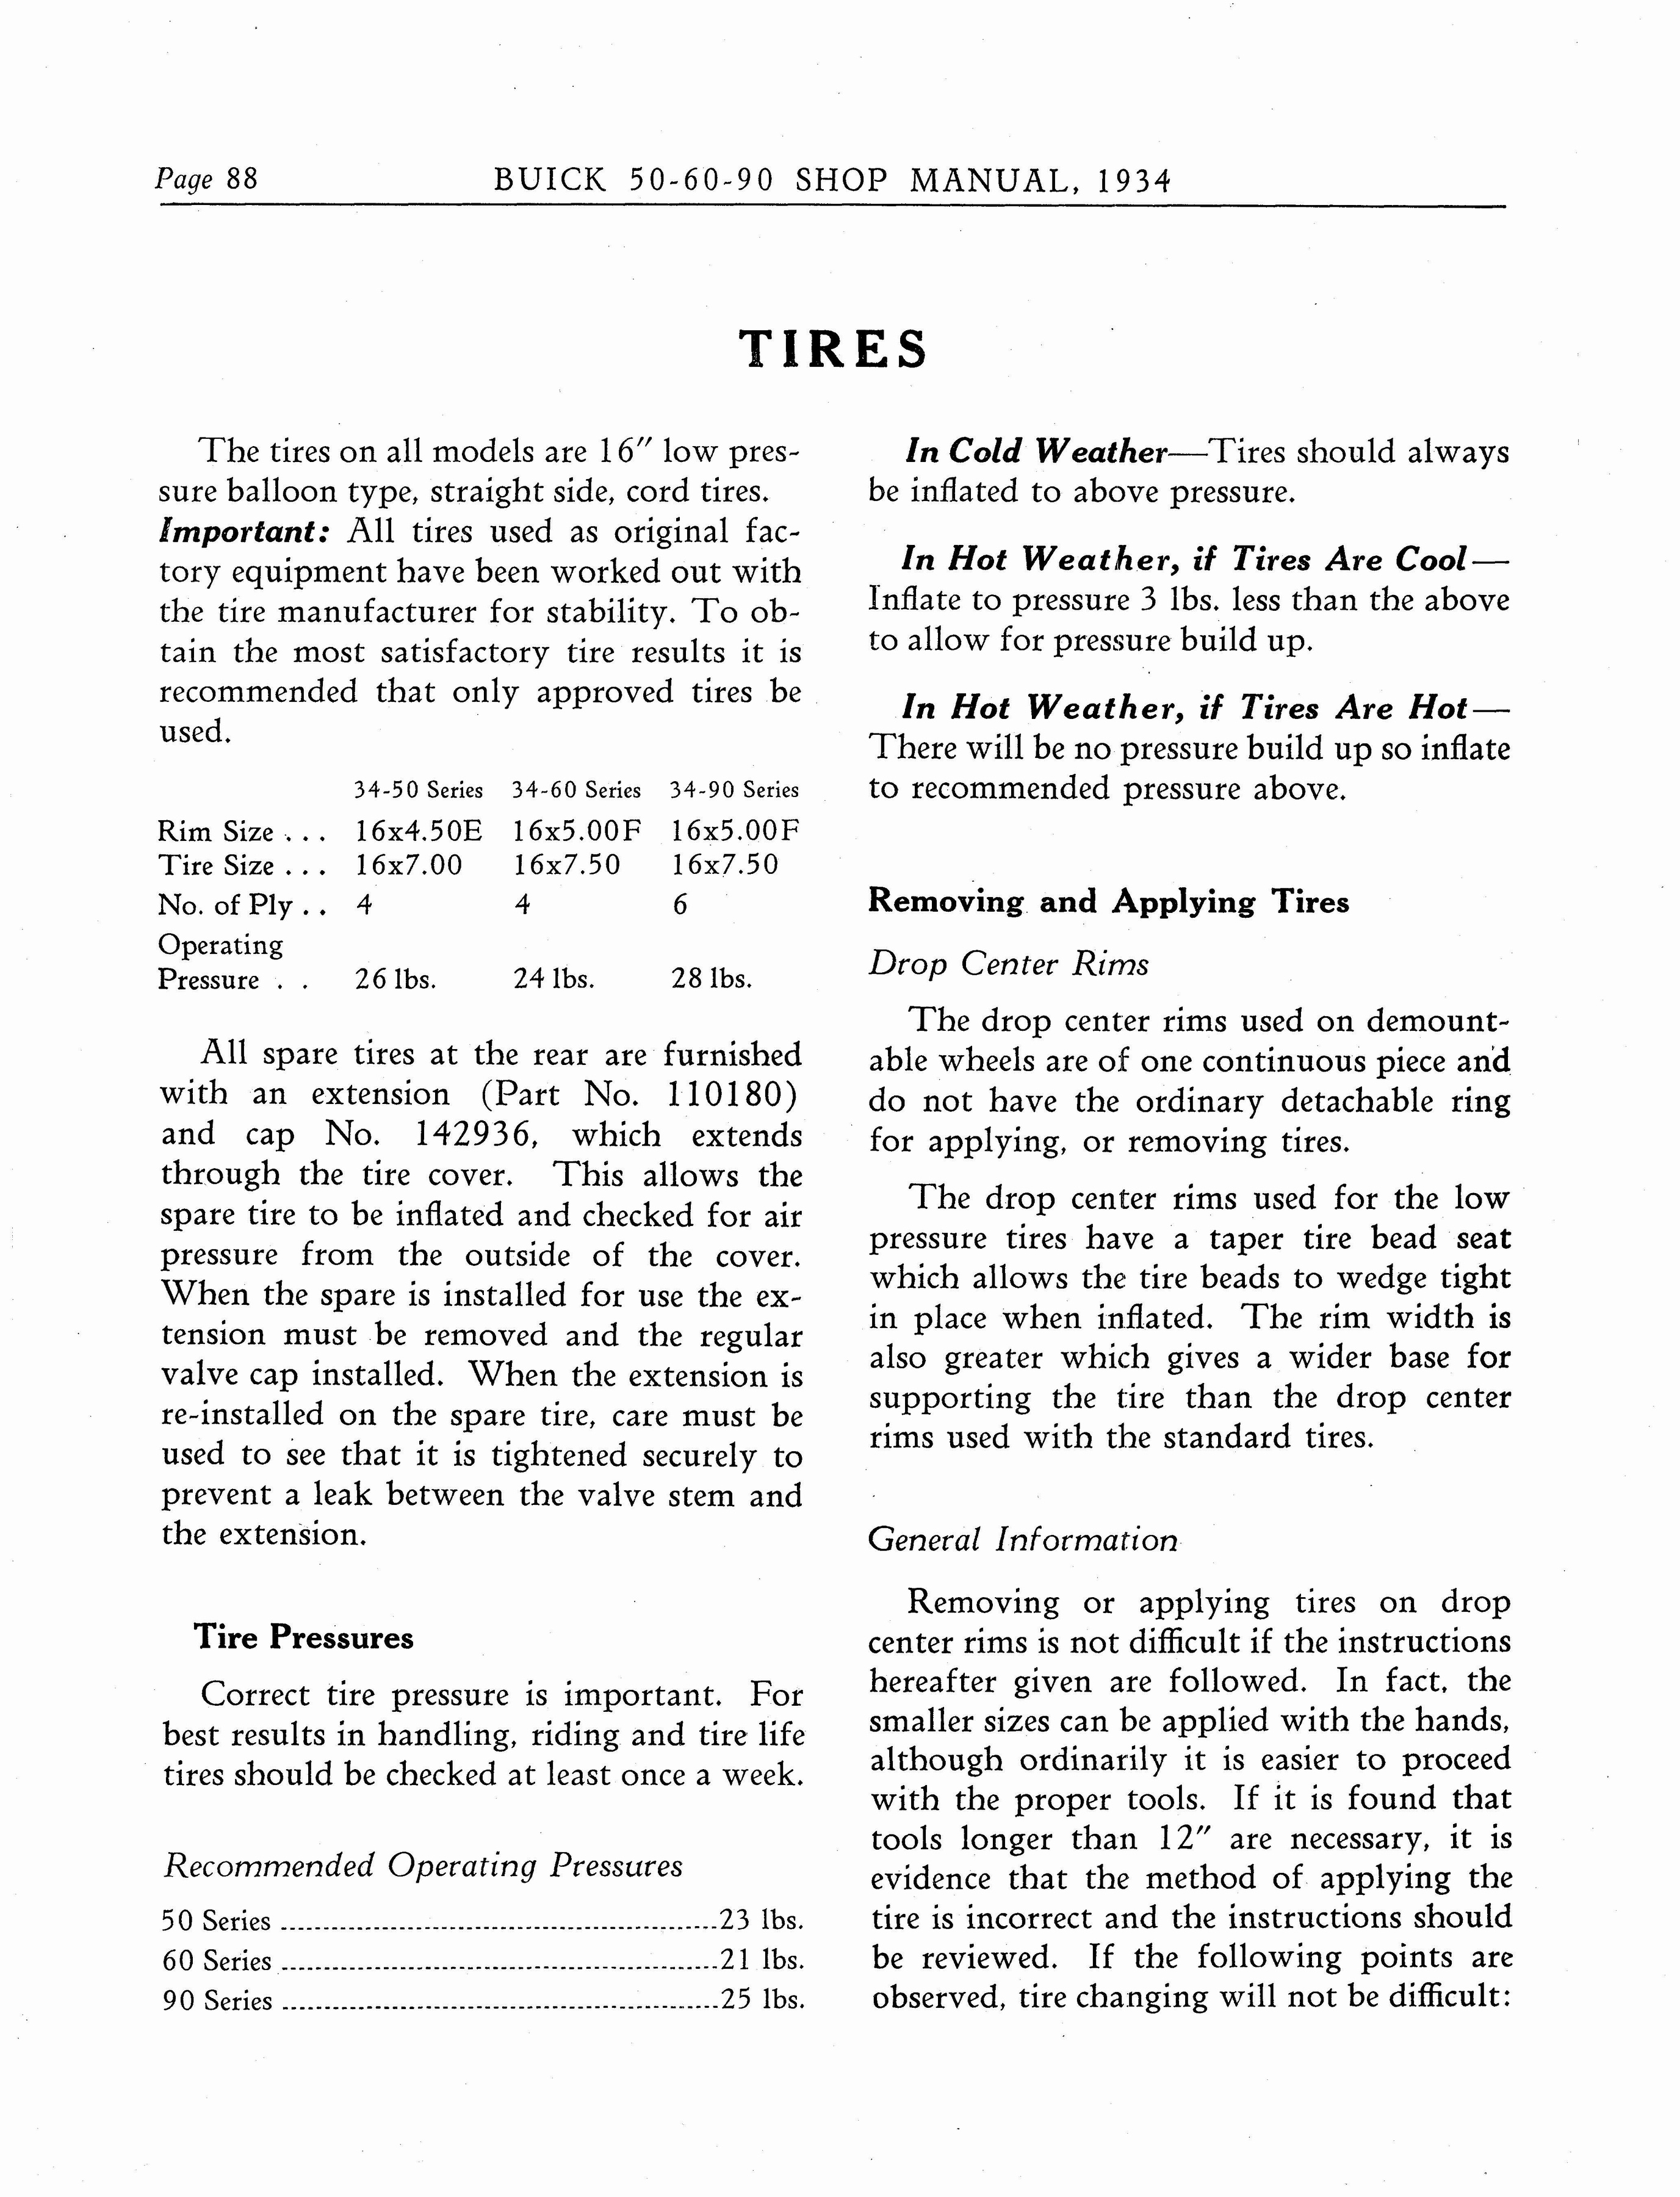 n_1934 Buick Series 50-60-90 Shop Manual_Page_089.jpg